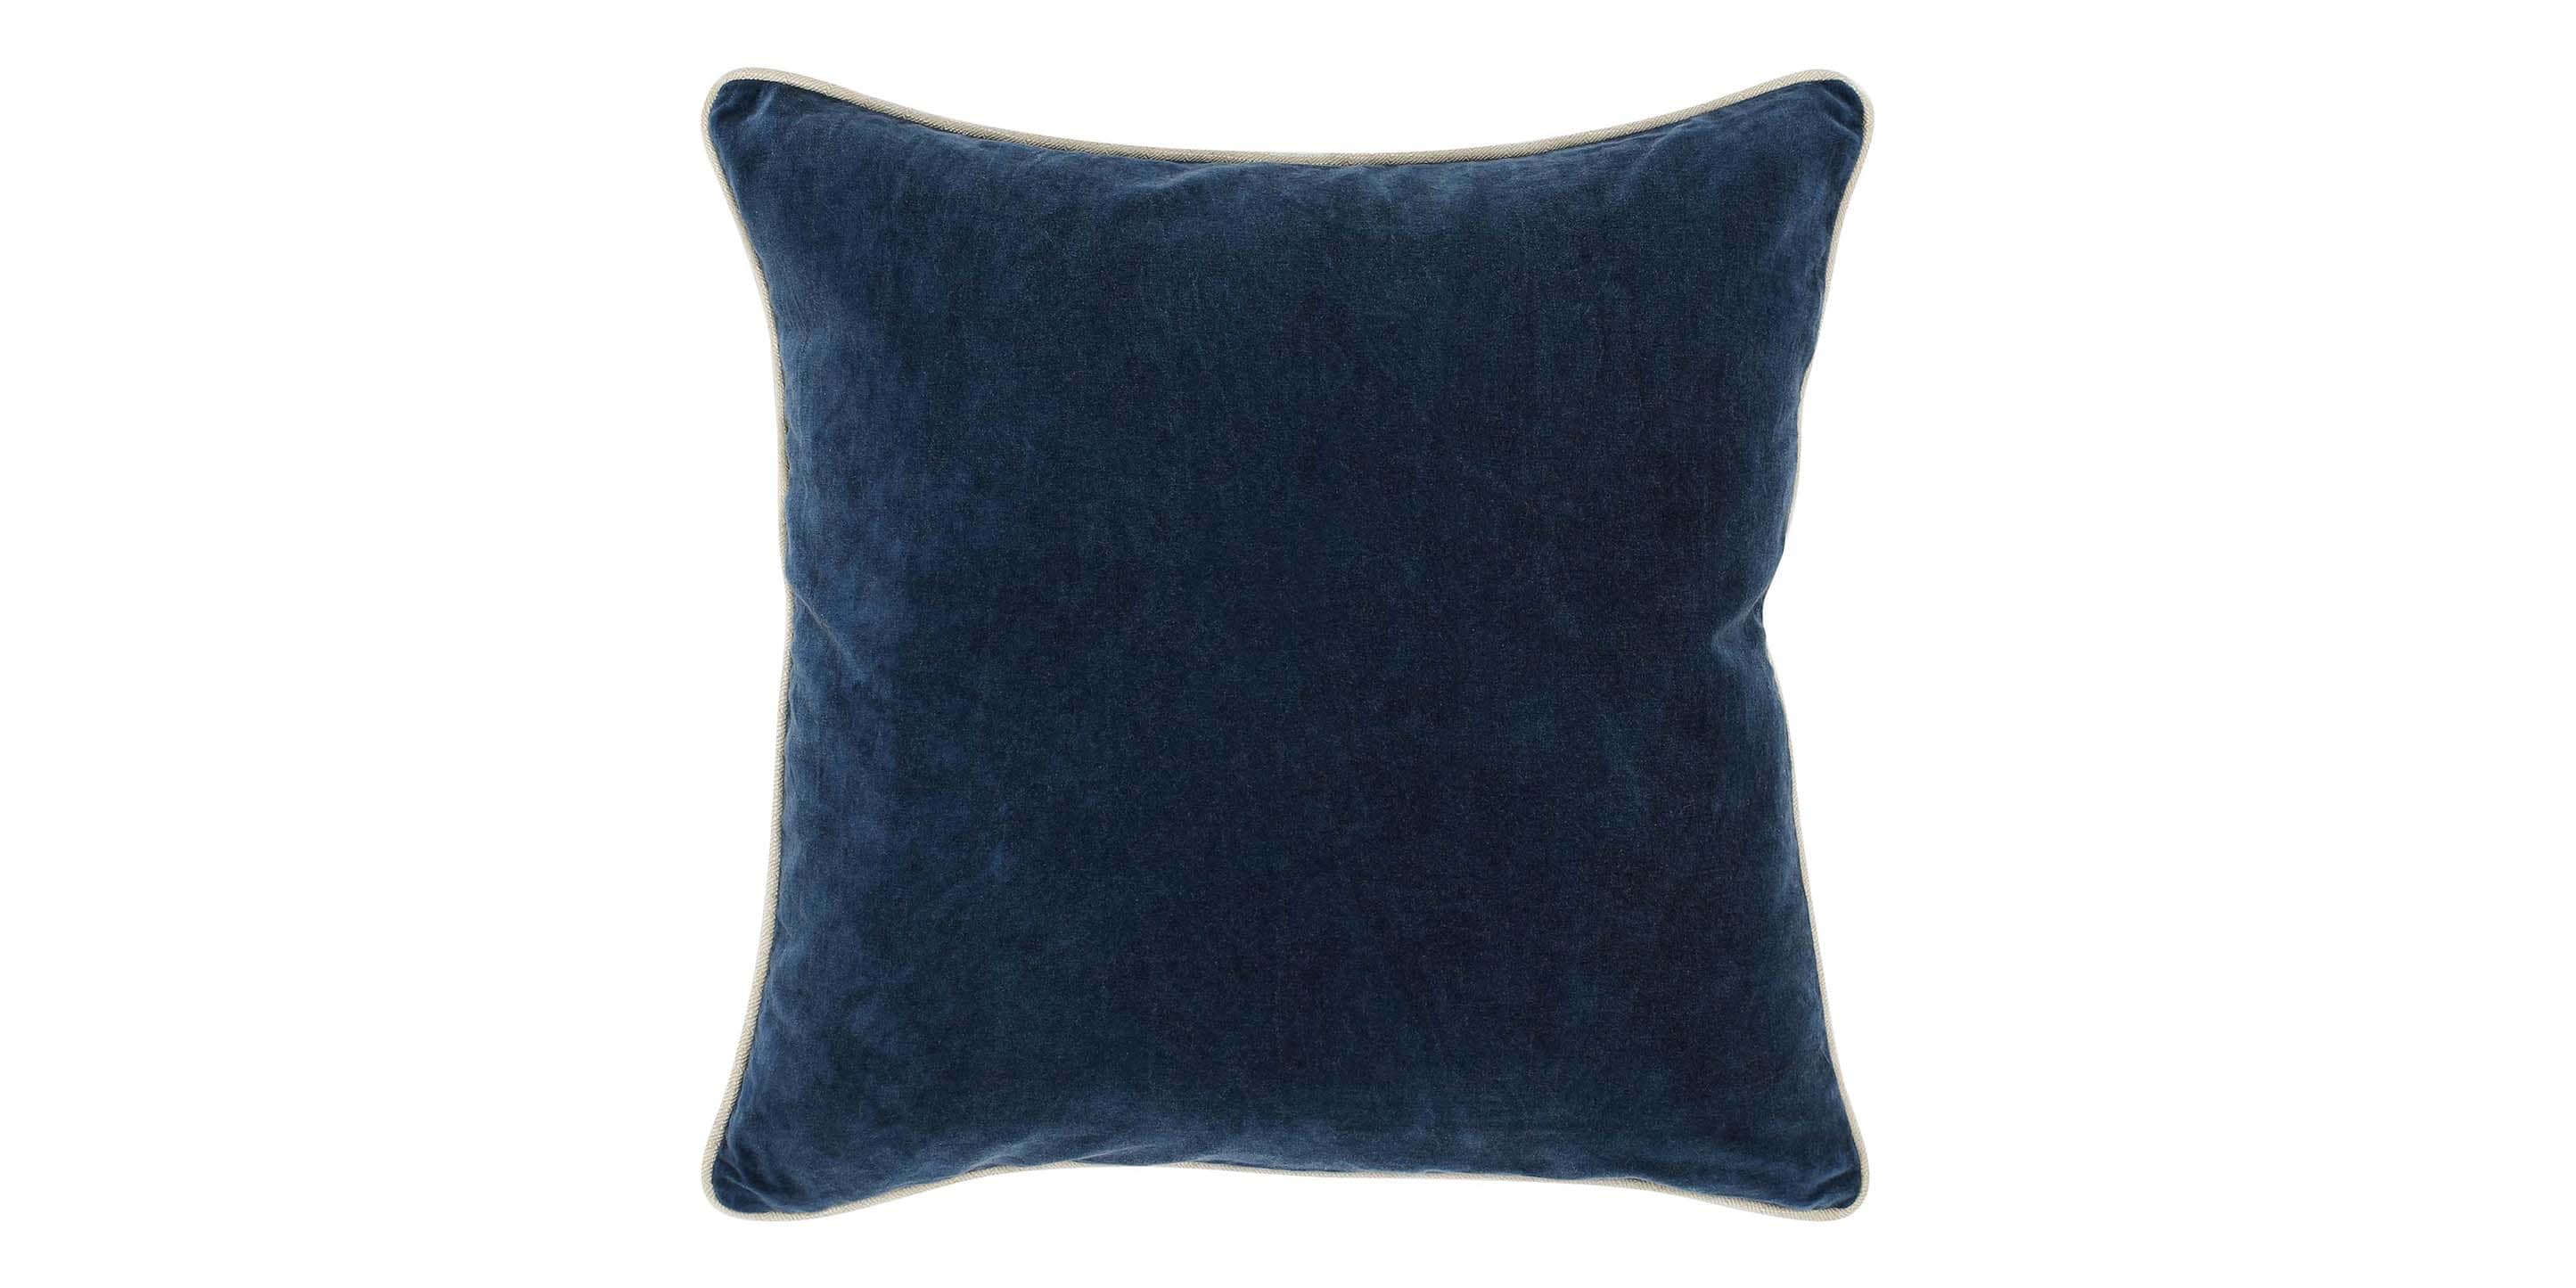 Heirloom Velvet Navy Pillow Cover+Insert